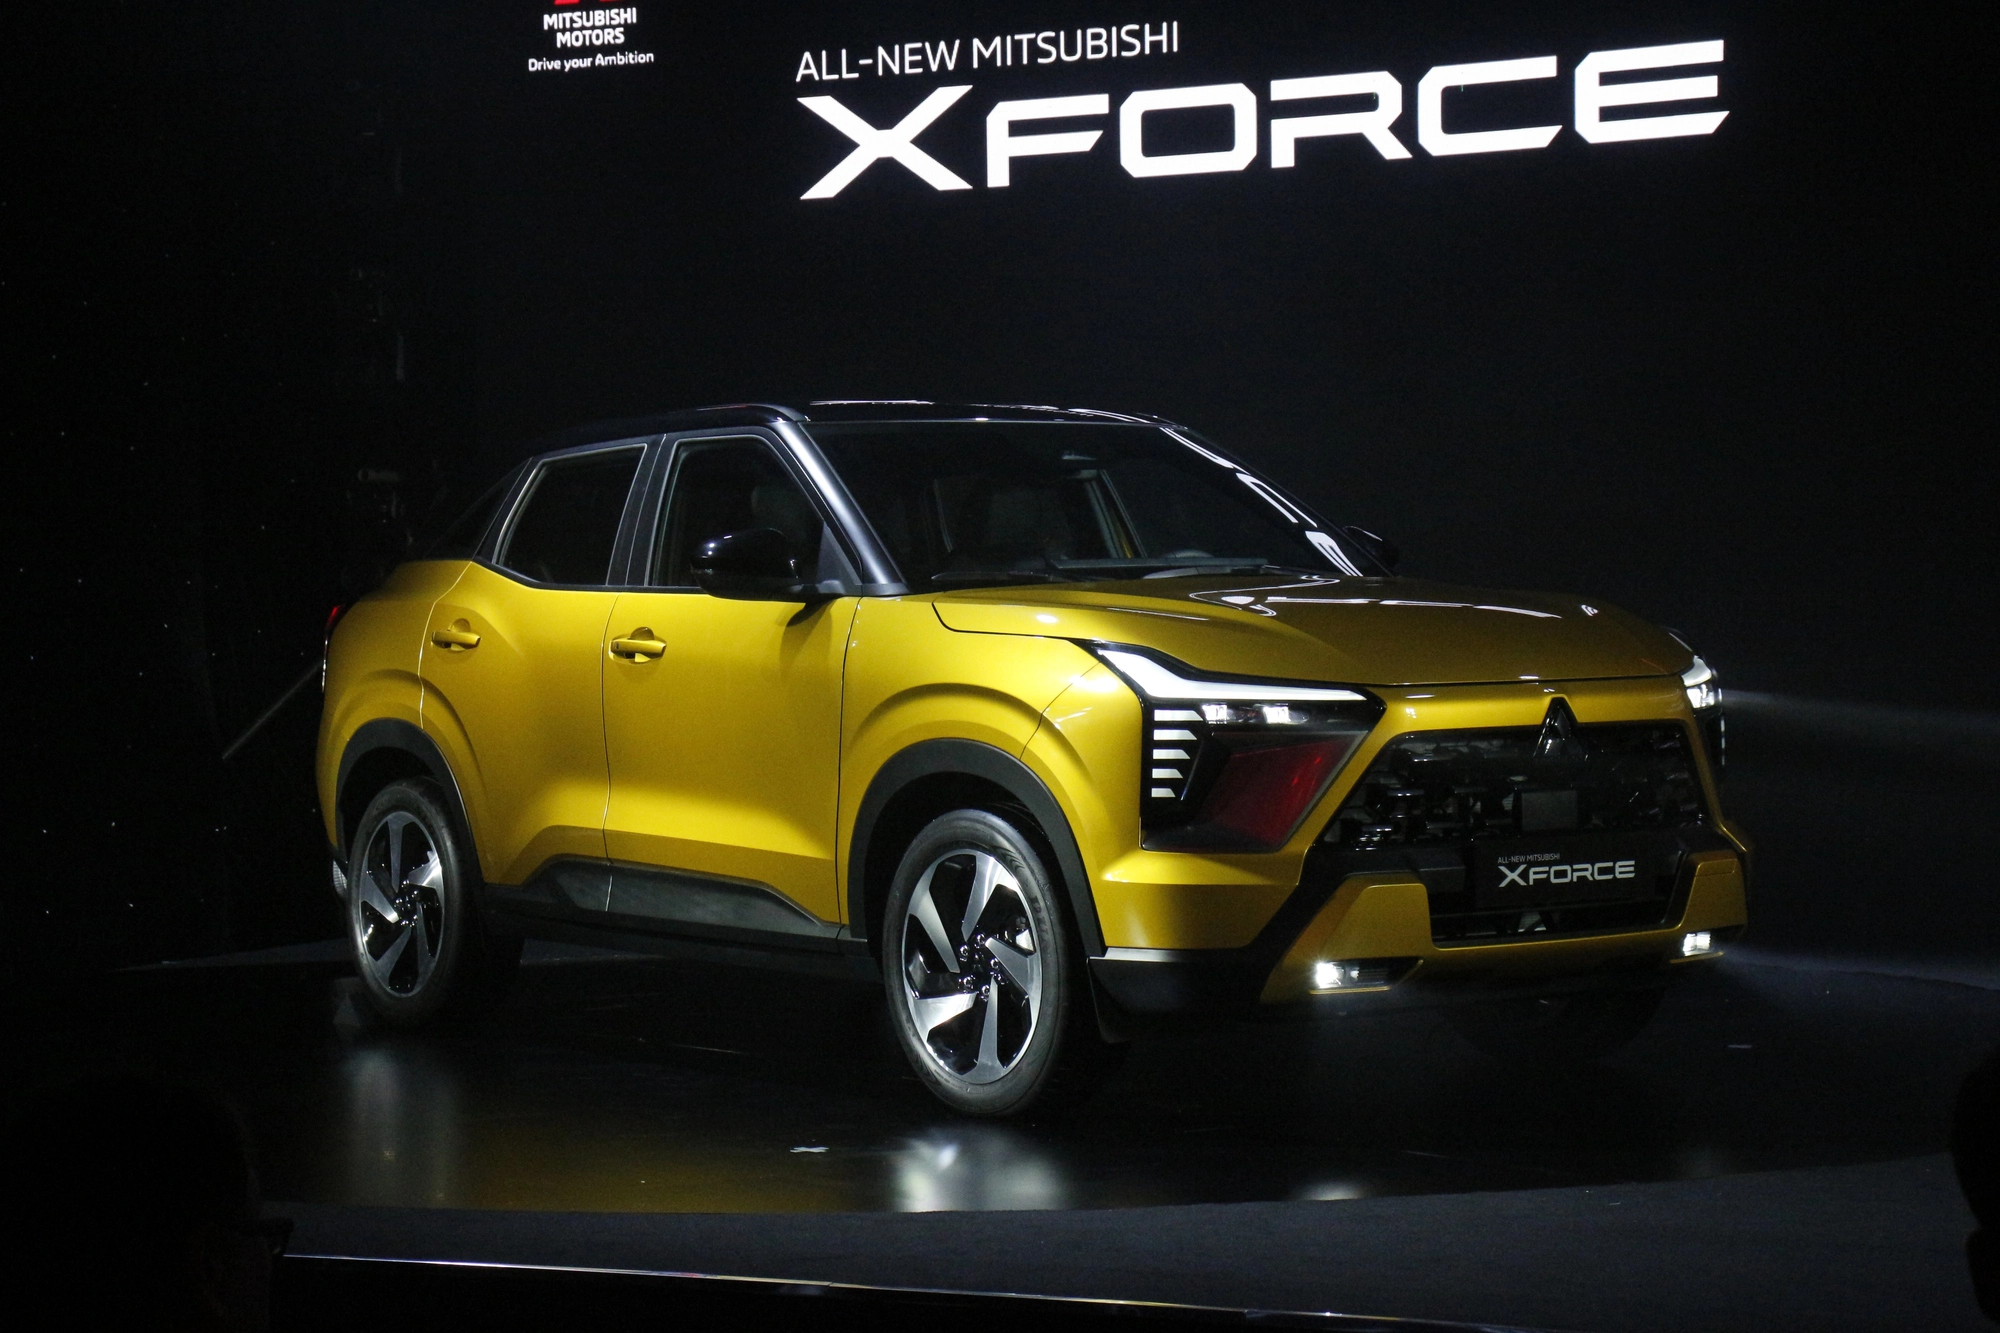 Điều gì giúp Mitsubishi Xforce lọt top xe bán chạy khi vừa ra mắt?